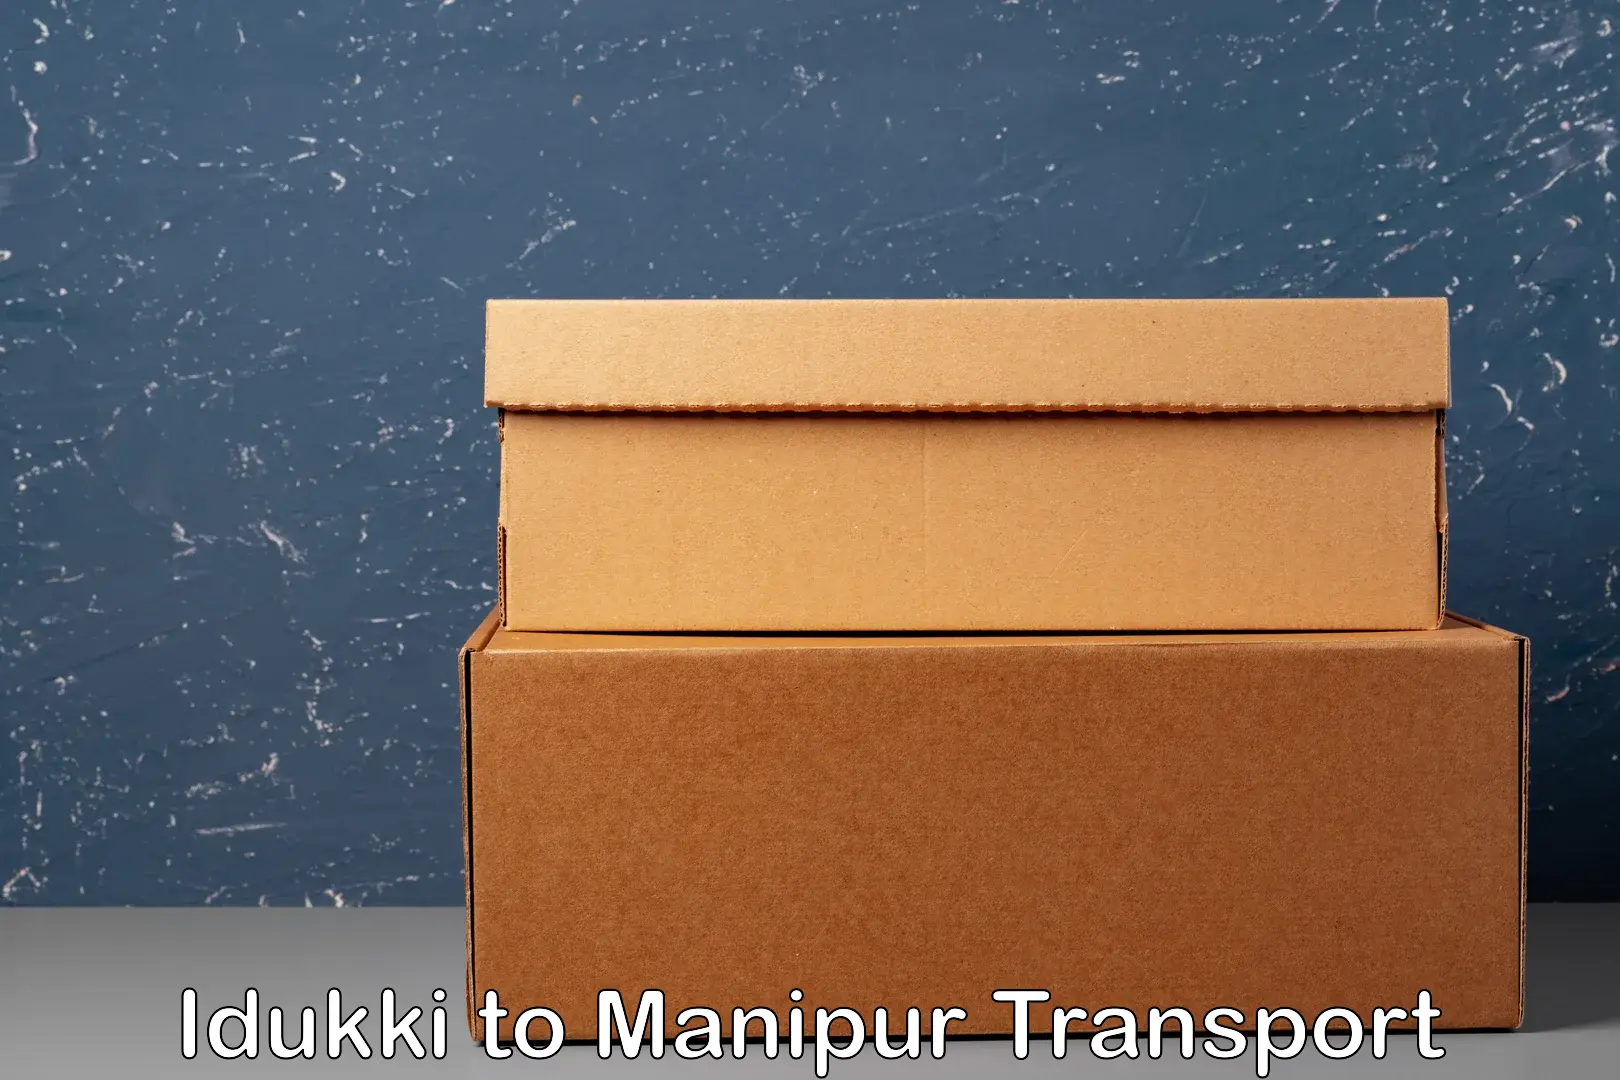 Cargo train transport services Idukki to Manipur